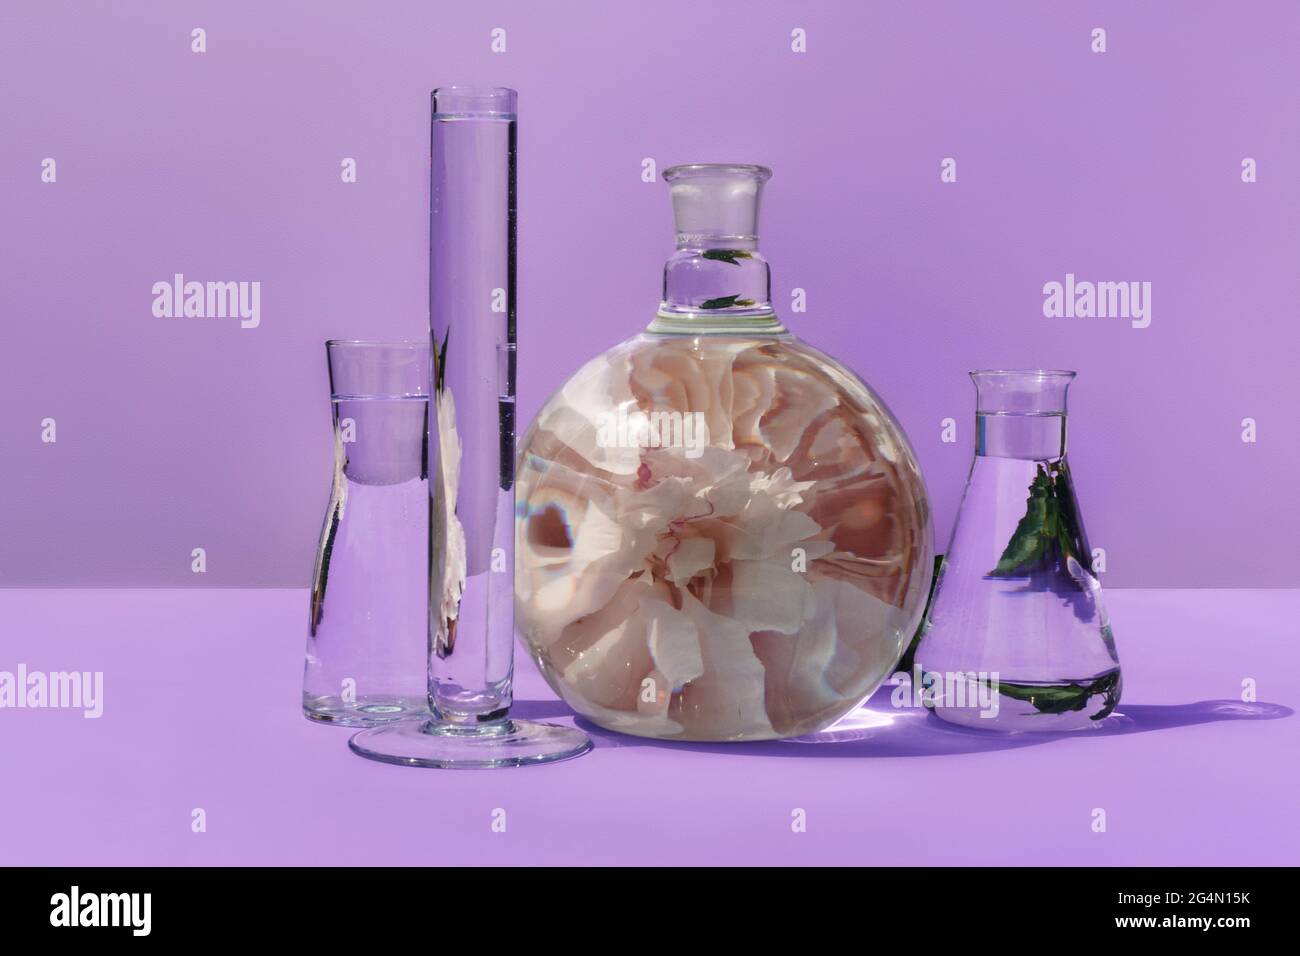 Glaskolben mit Pfingstrose auf violettem Hintergrund. Laborgeräte mit einer Spiegelung einer Blume im Inneren. Auf violettem Hintergrund, Vorderansicht. Stockfoto